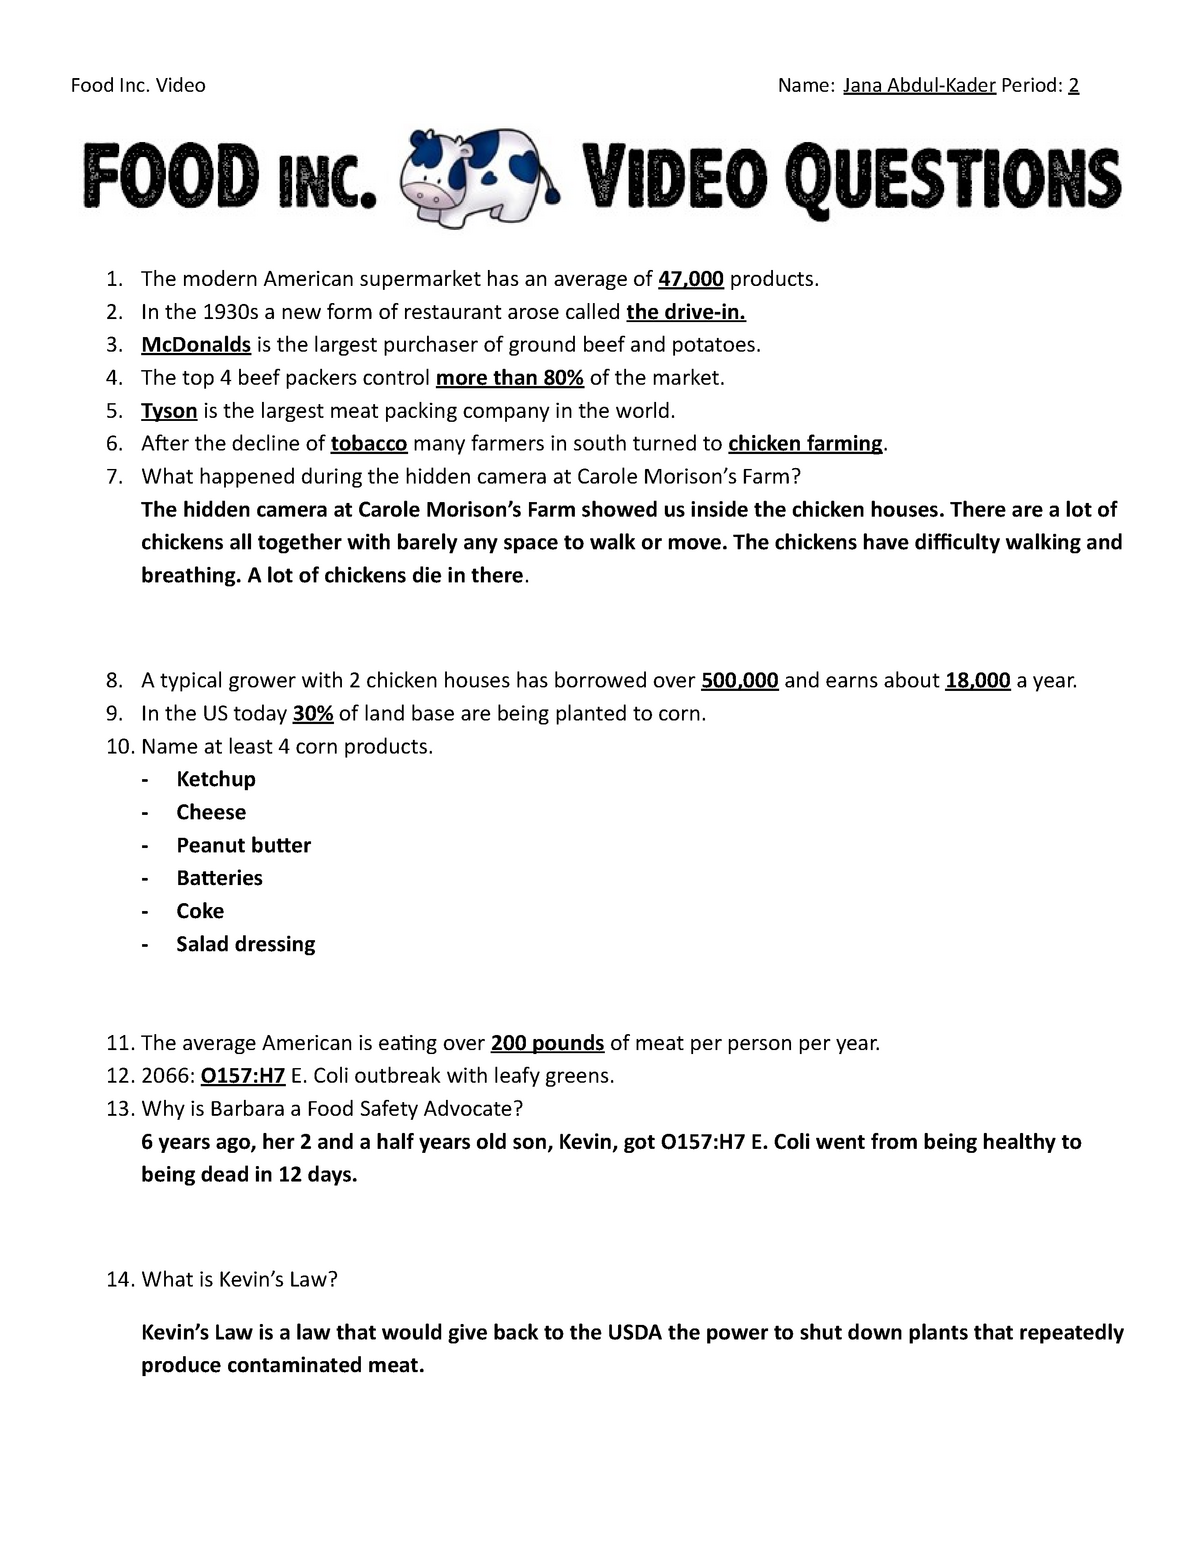 Food Inc Worksheet - Food Inc movie questions and answers. - Food For Food Inc Movie Worksheet Answers